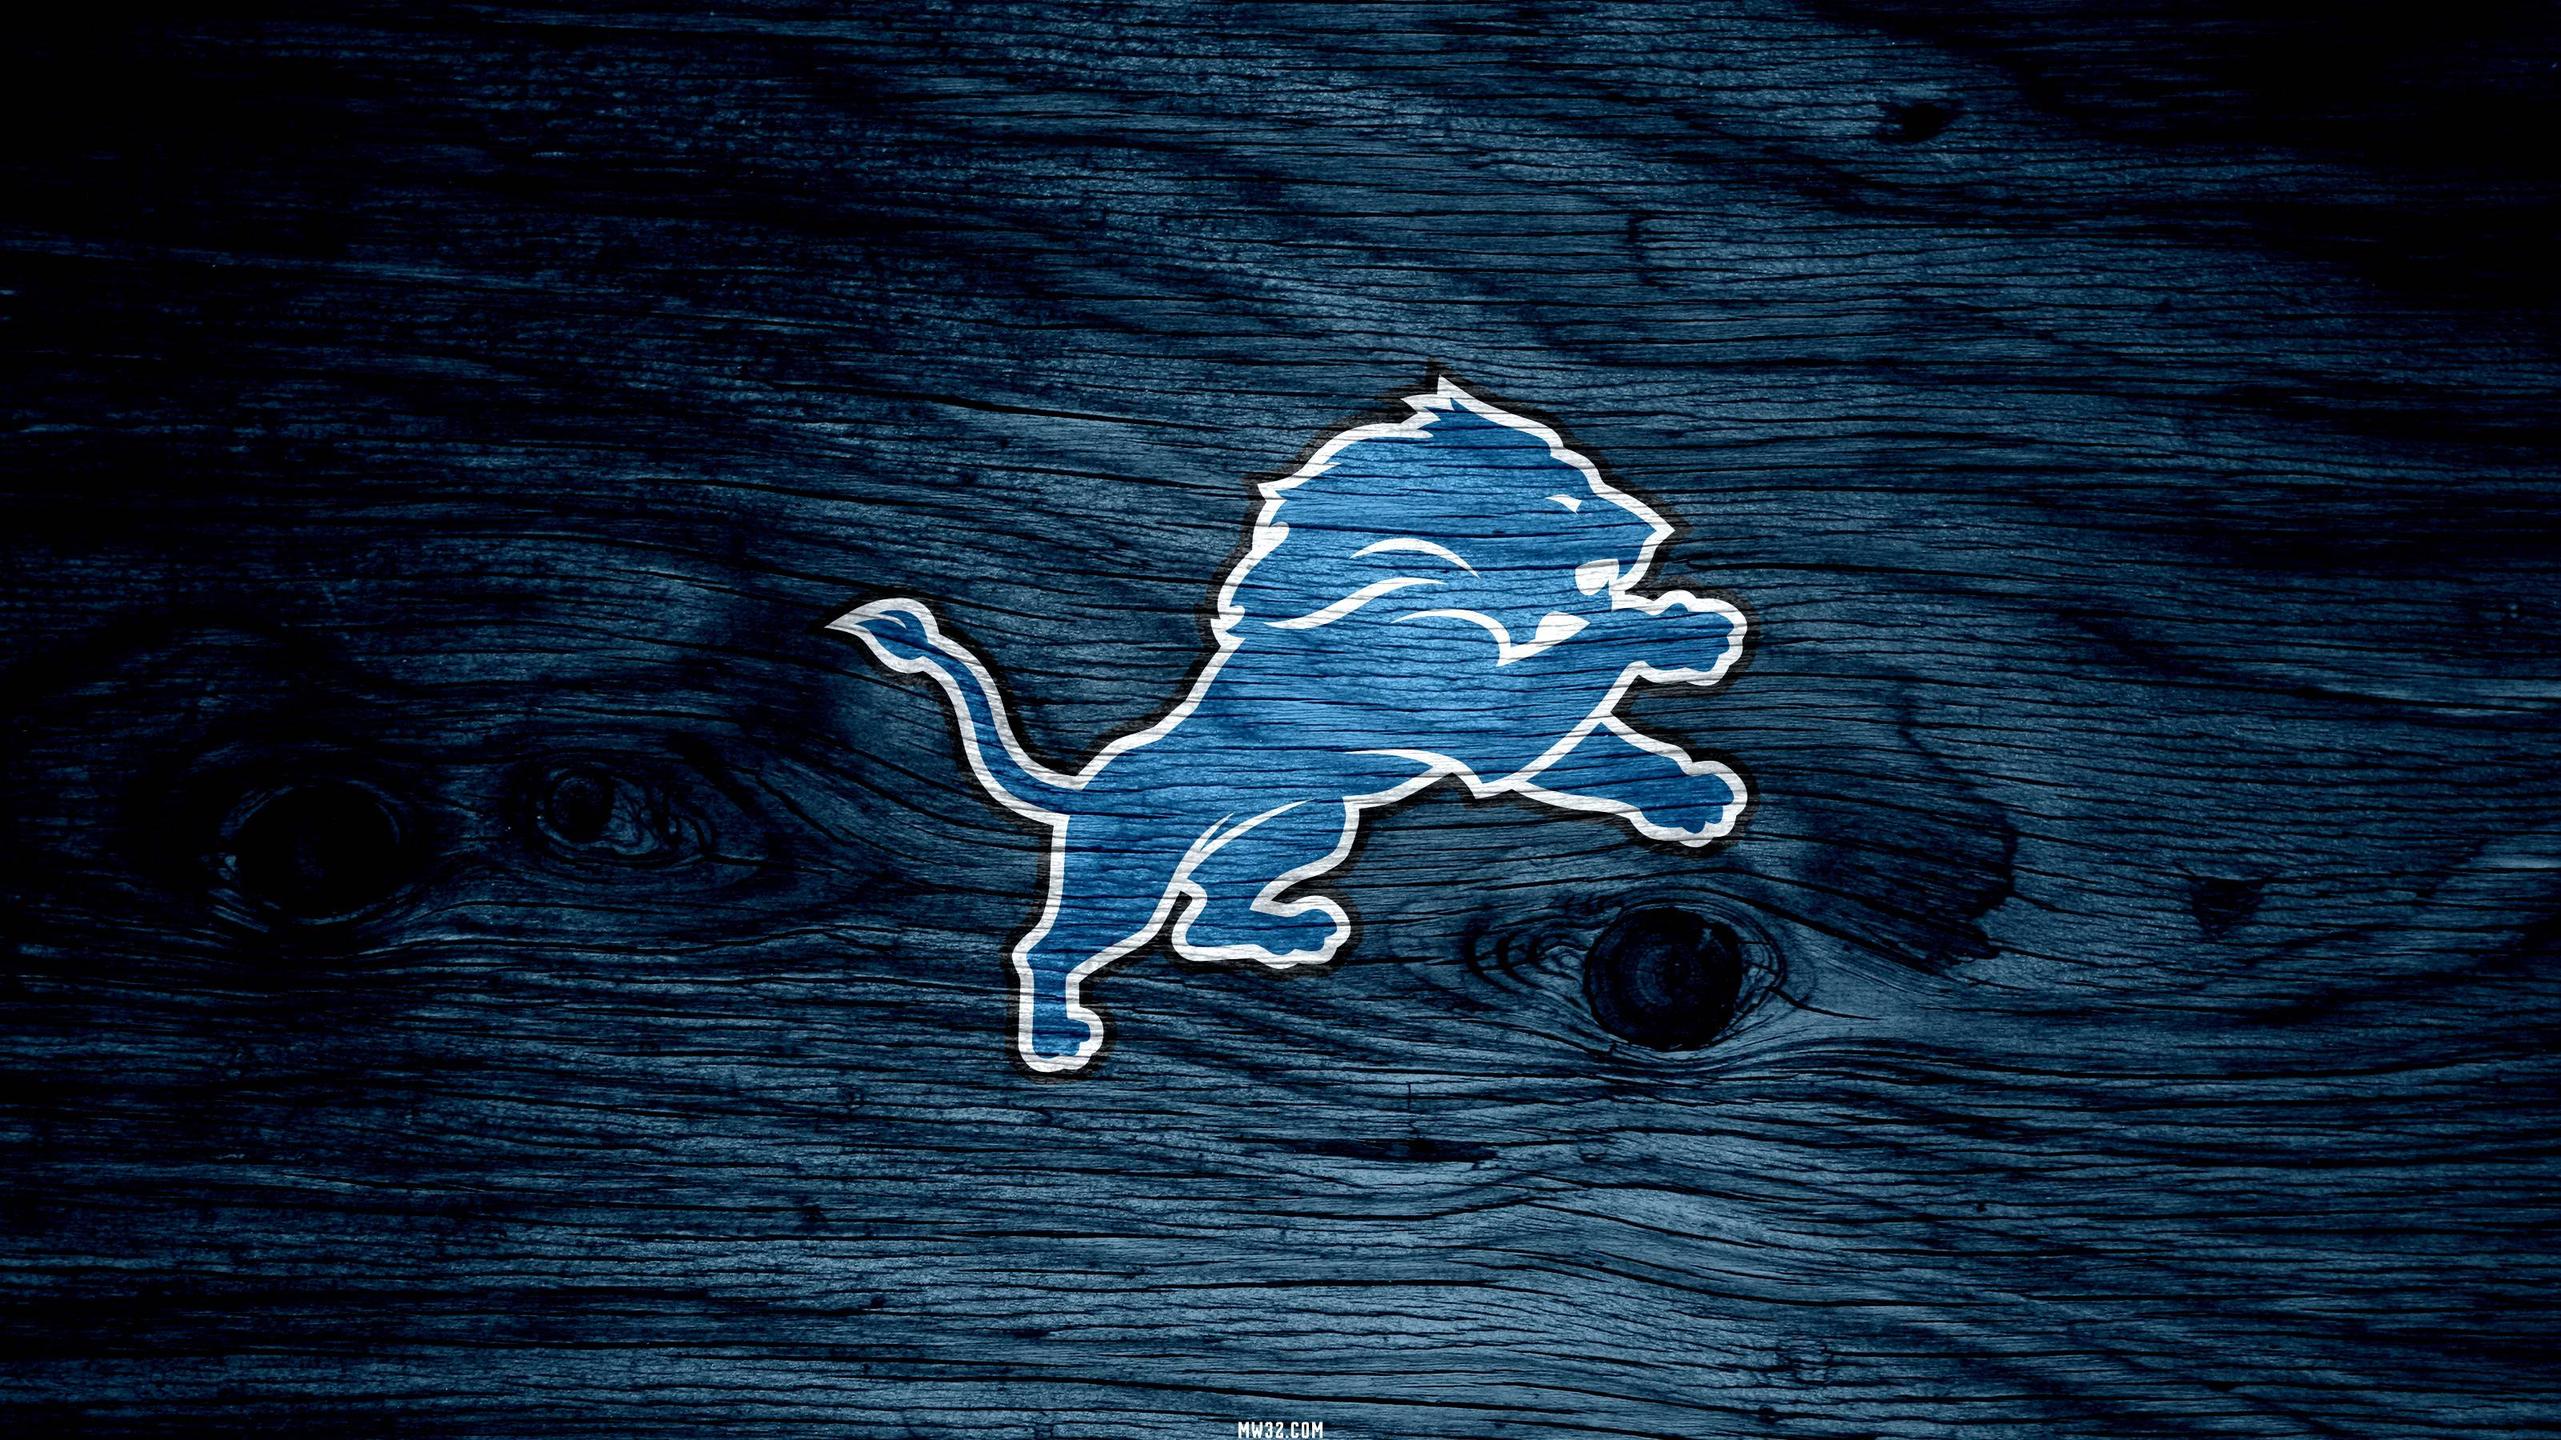 Detroit Lions Desktop Wallpapers